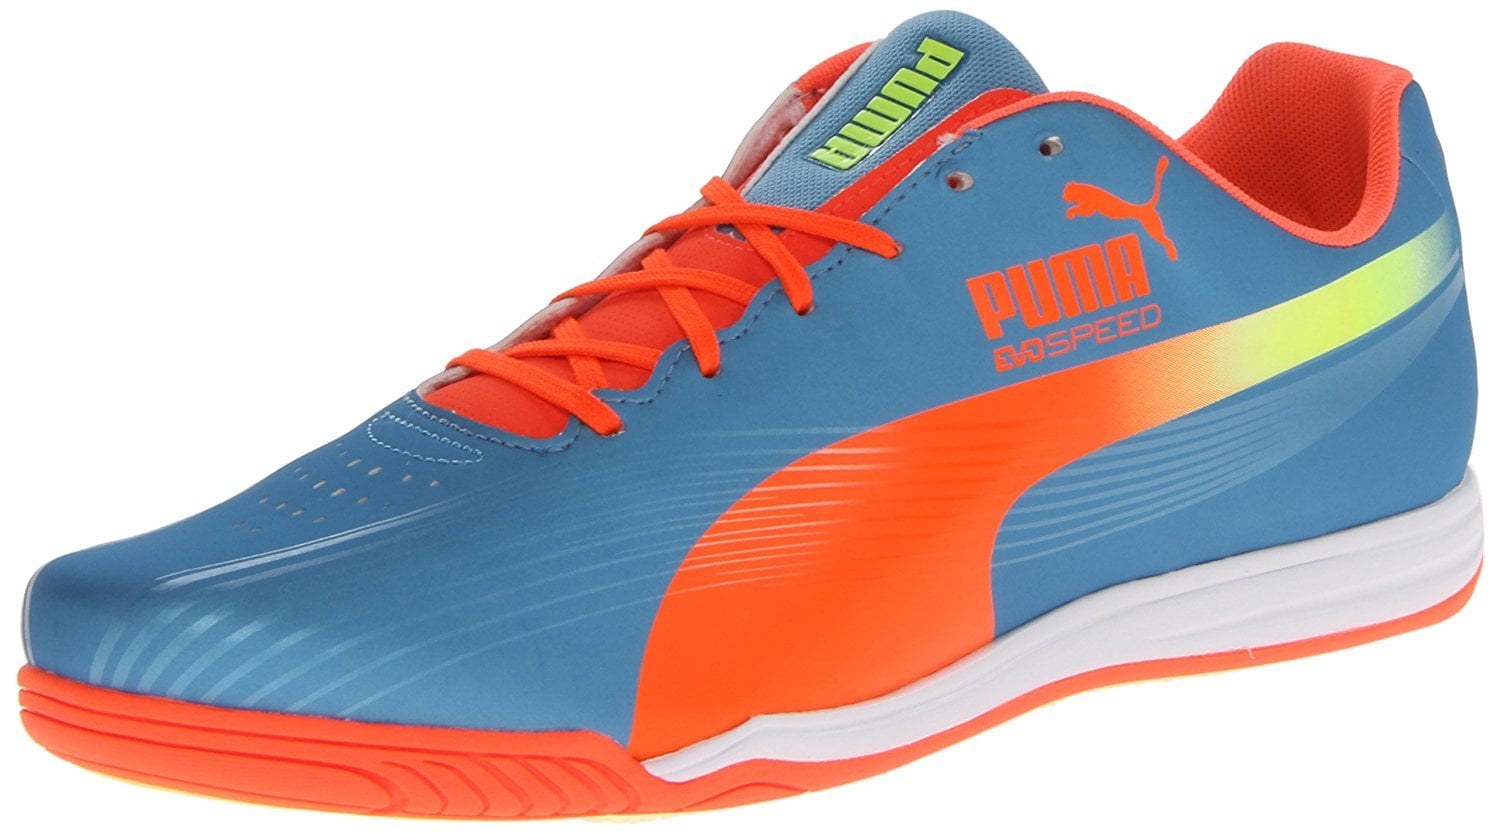 PUMA Men's Puma Evospeed Star II Soccer Shoe,Sharks Blue/Fluorescent Peach/Fluorescent Yellow,13 M US -